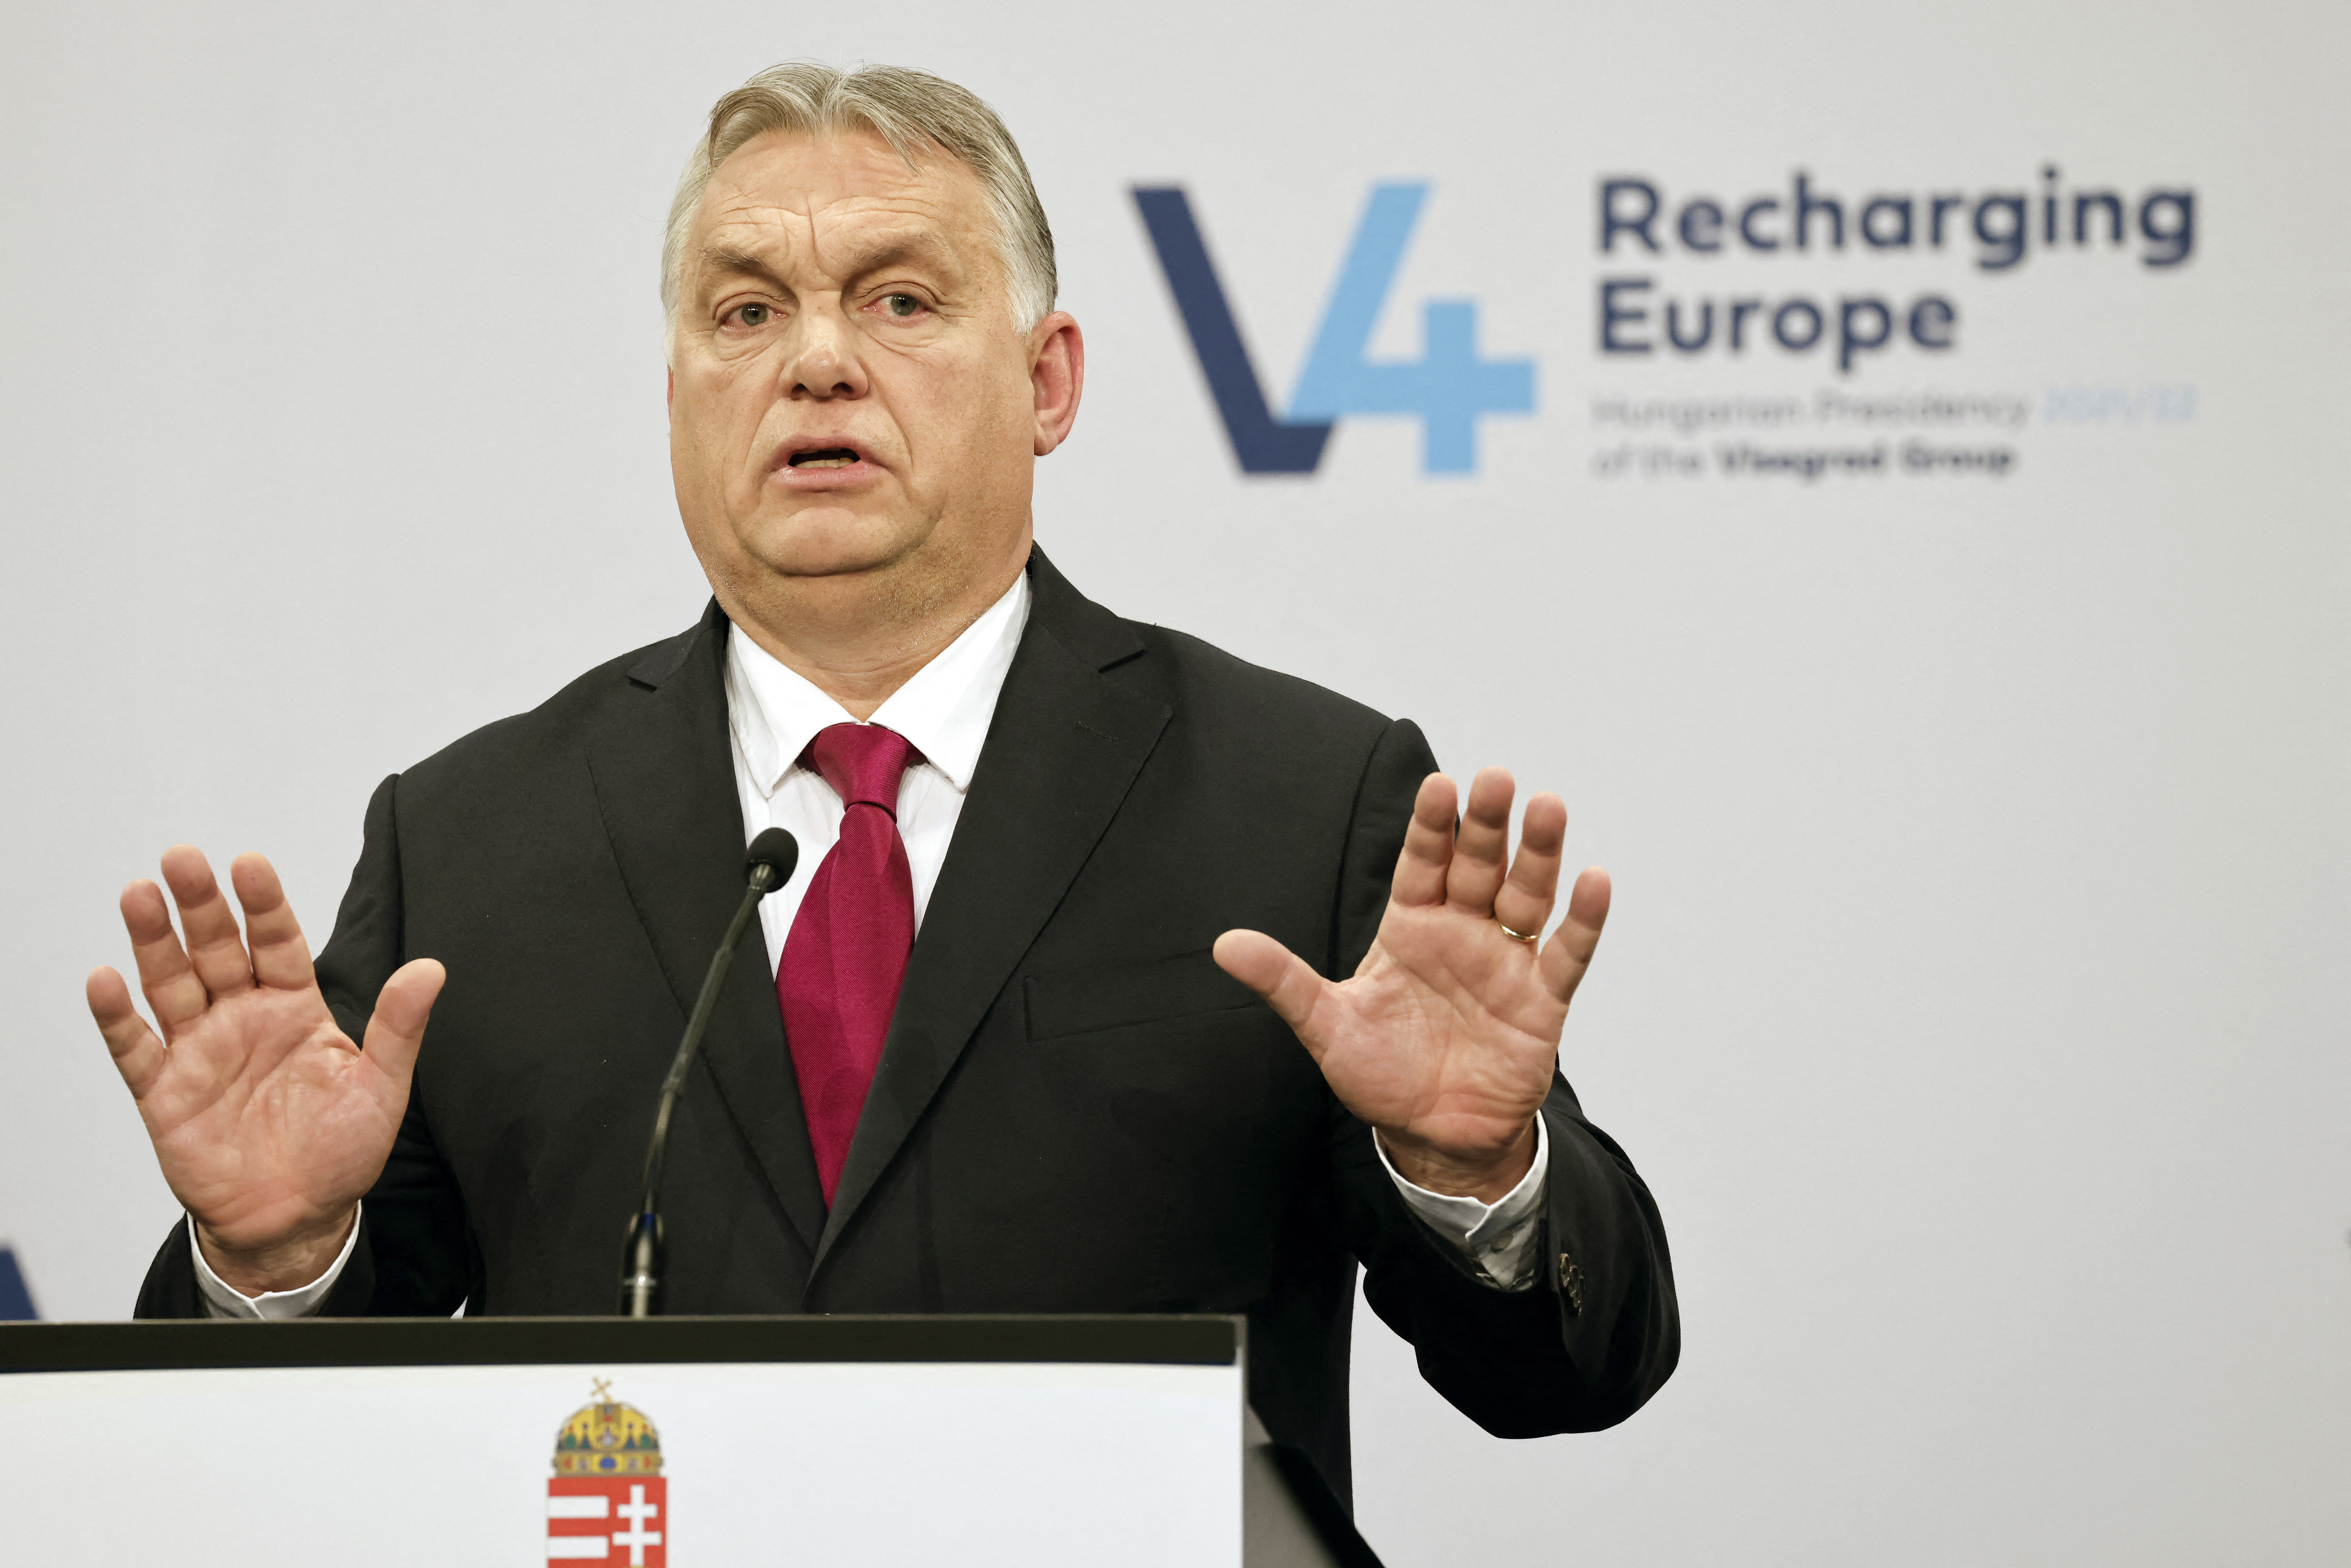 Majdnem beengedték a Magyar Hangot Orbán sajtótájékoztatójára